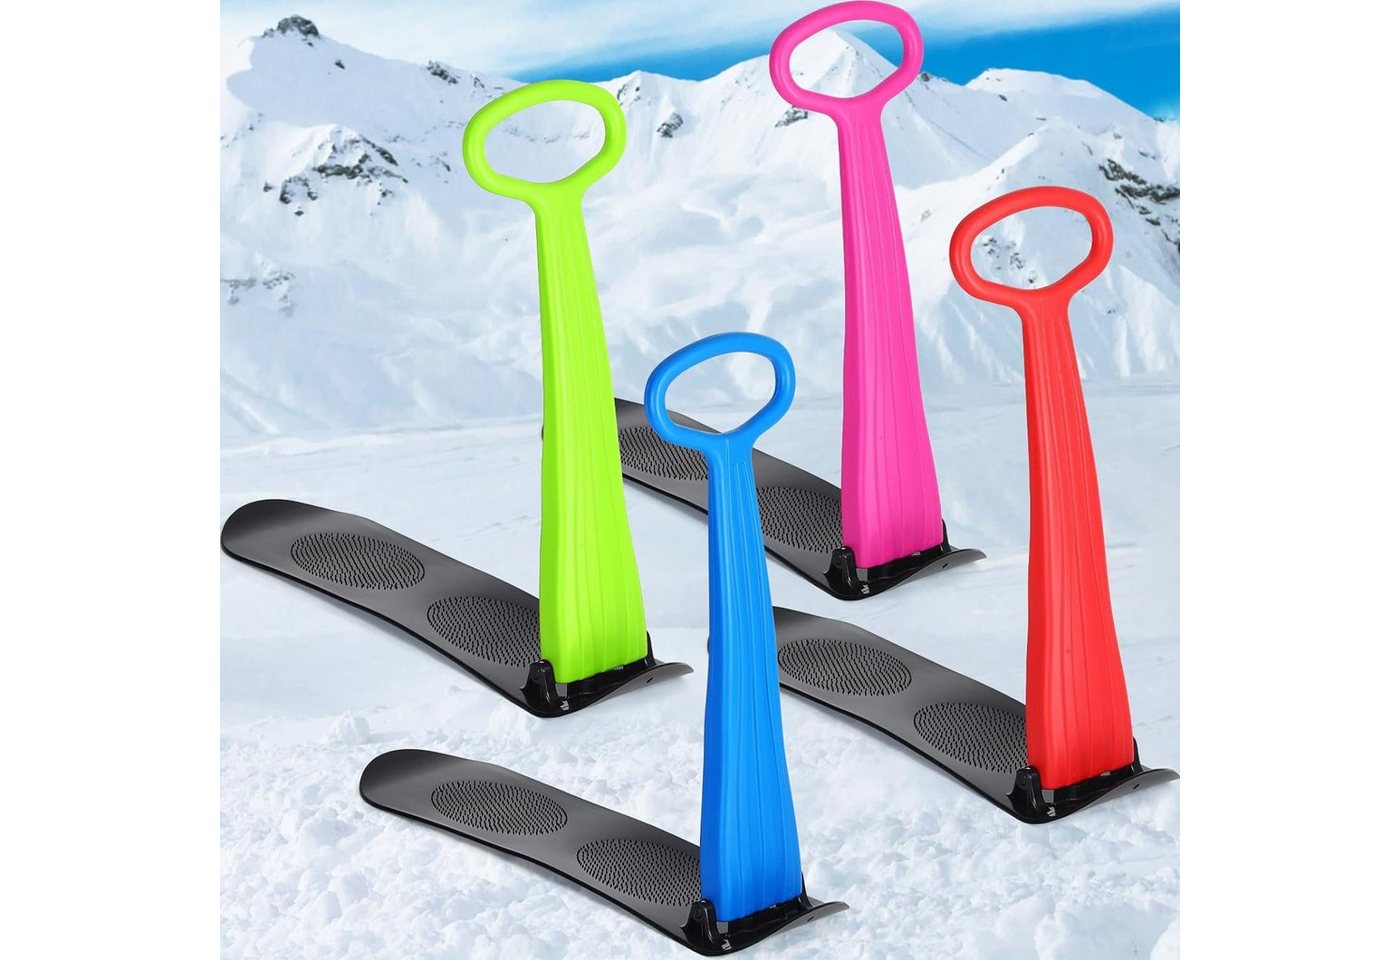 yozhiqu Snowboard Schlittenförmiger, faltbarer Schneescooter aus Kunststoff mit Griff, Faltbar und Spaßig - Praktischer Schlitten-Scooter für winterlichen von yozhiqu